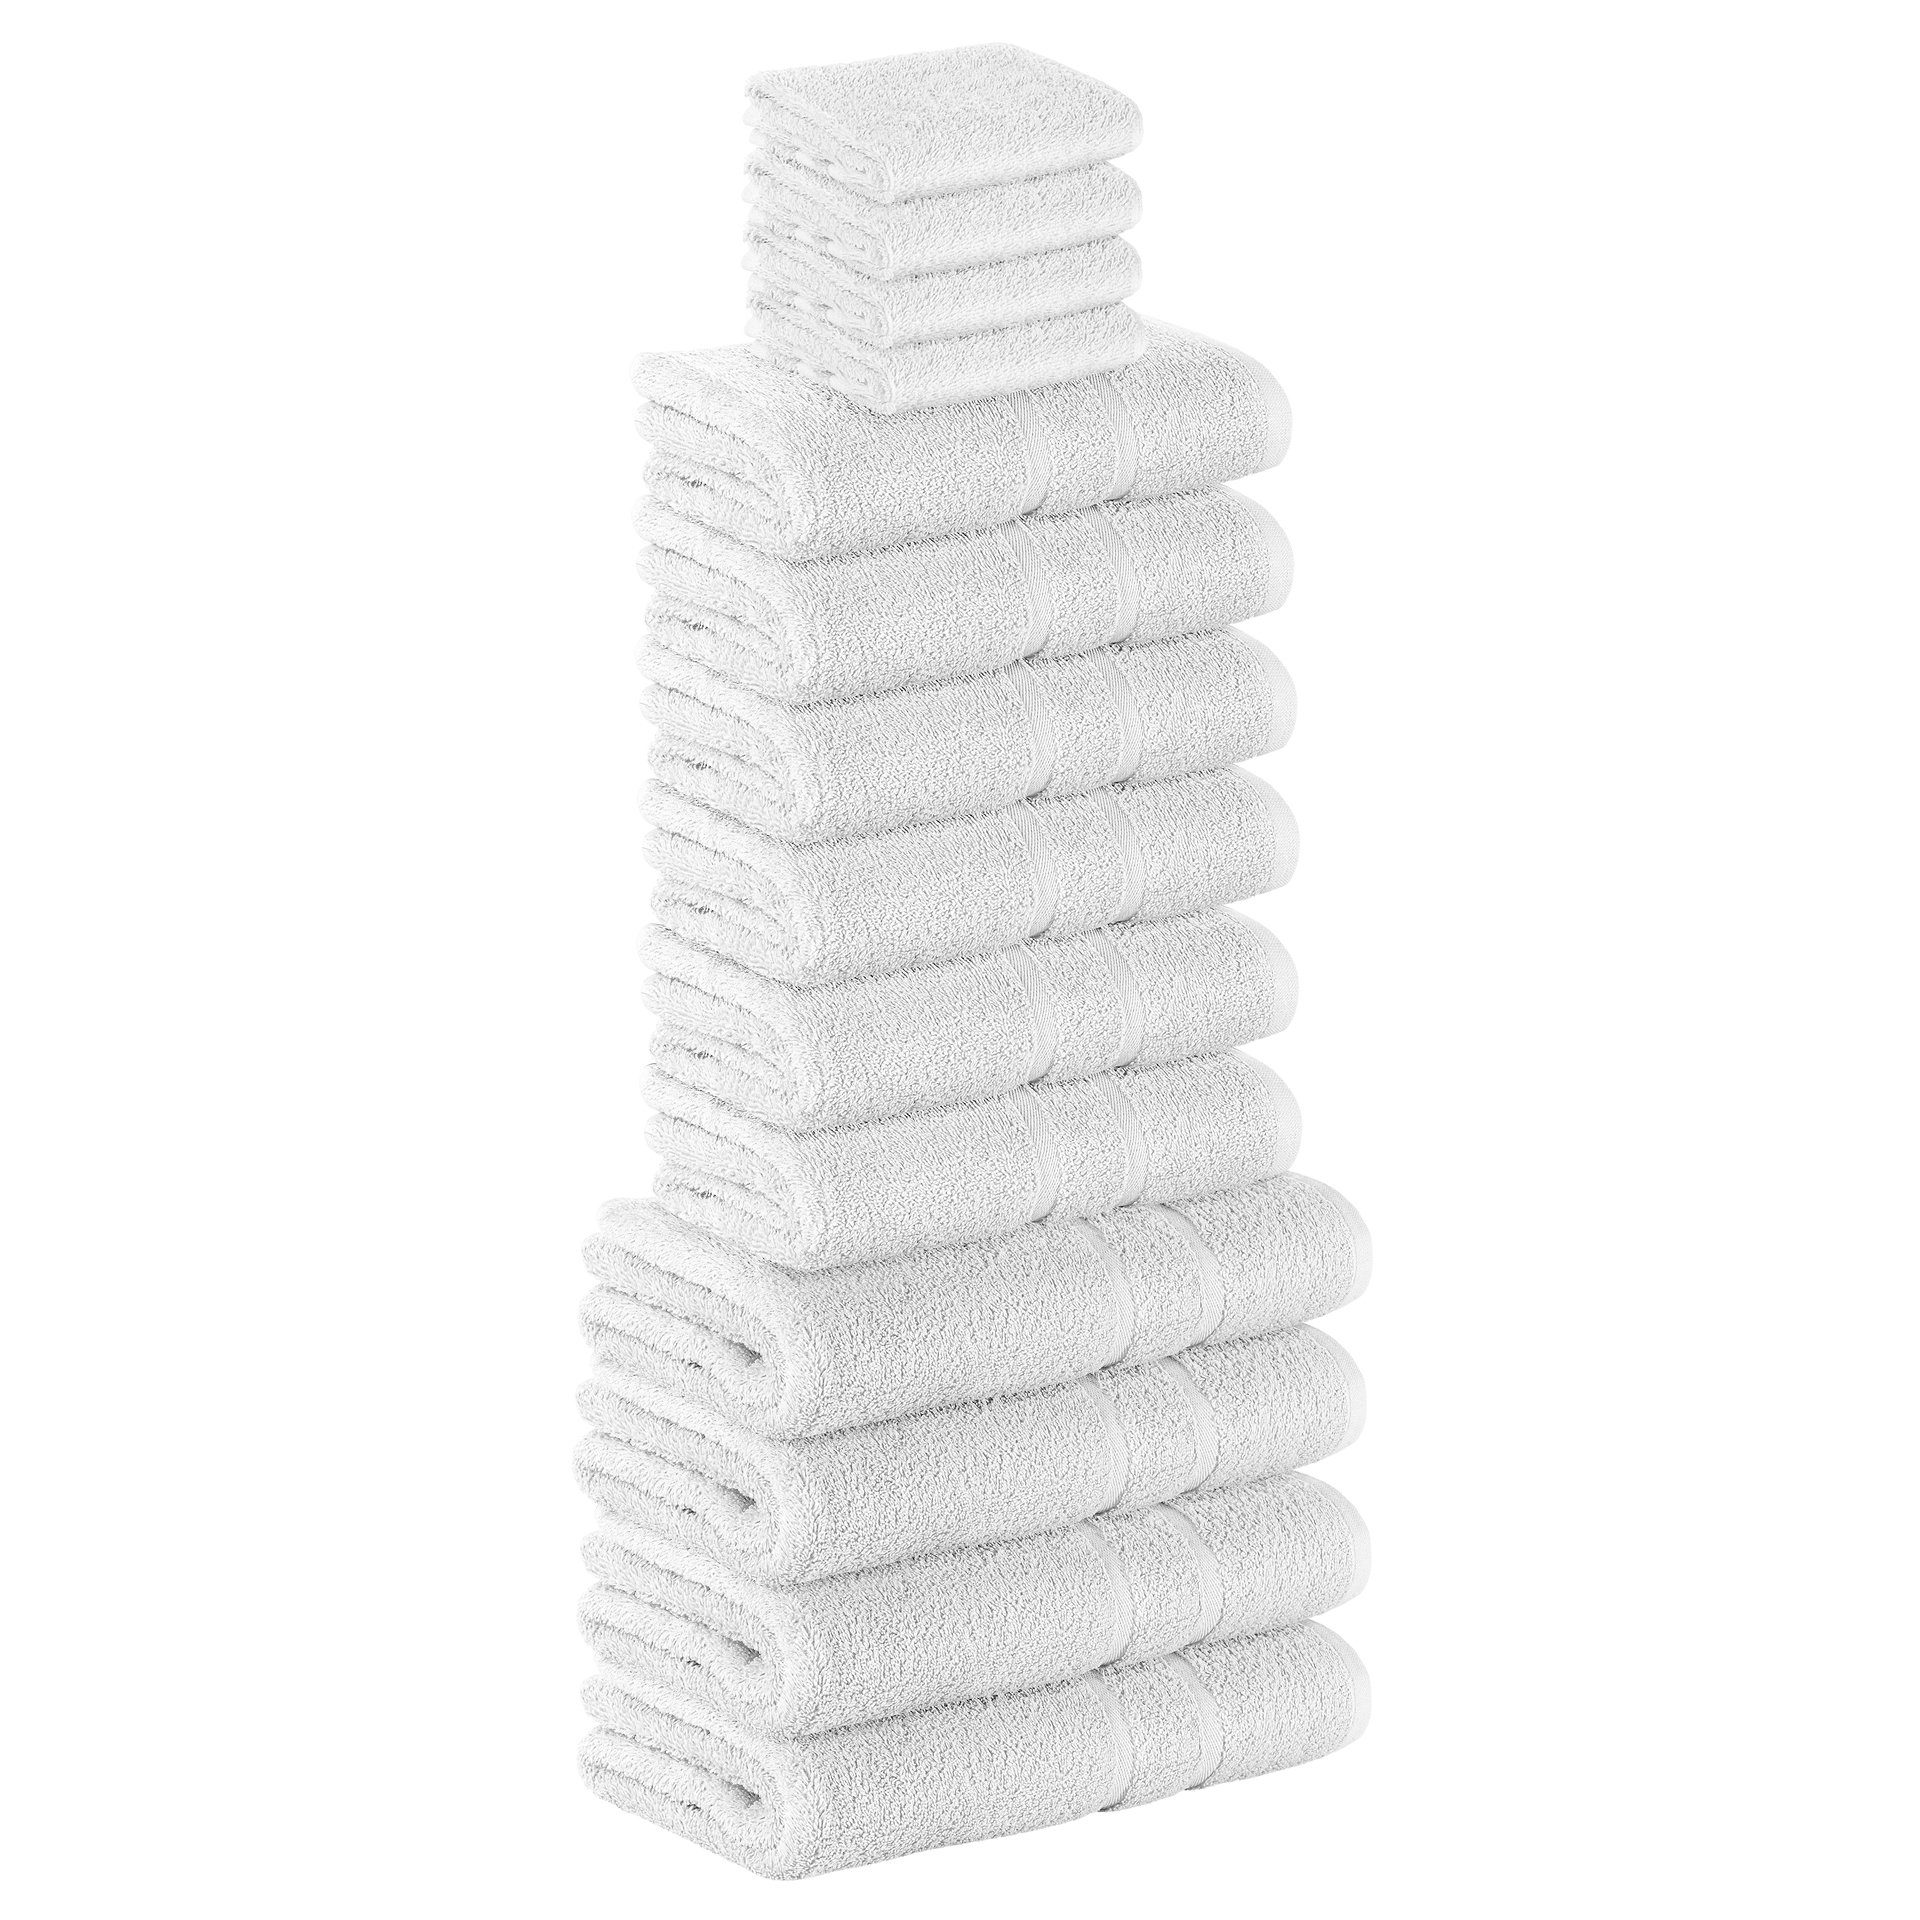 StickandShine Handtuch Set 4x Gästehandtuch 6x Handtücher 4x Duschtücher als SET in verschiedenen Farben (14 Teilig) 100% Baumwolle 500 GSM Frottee 14er Handtuch Pack, 100% Baumwolle 500 GSM Weiß